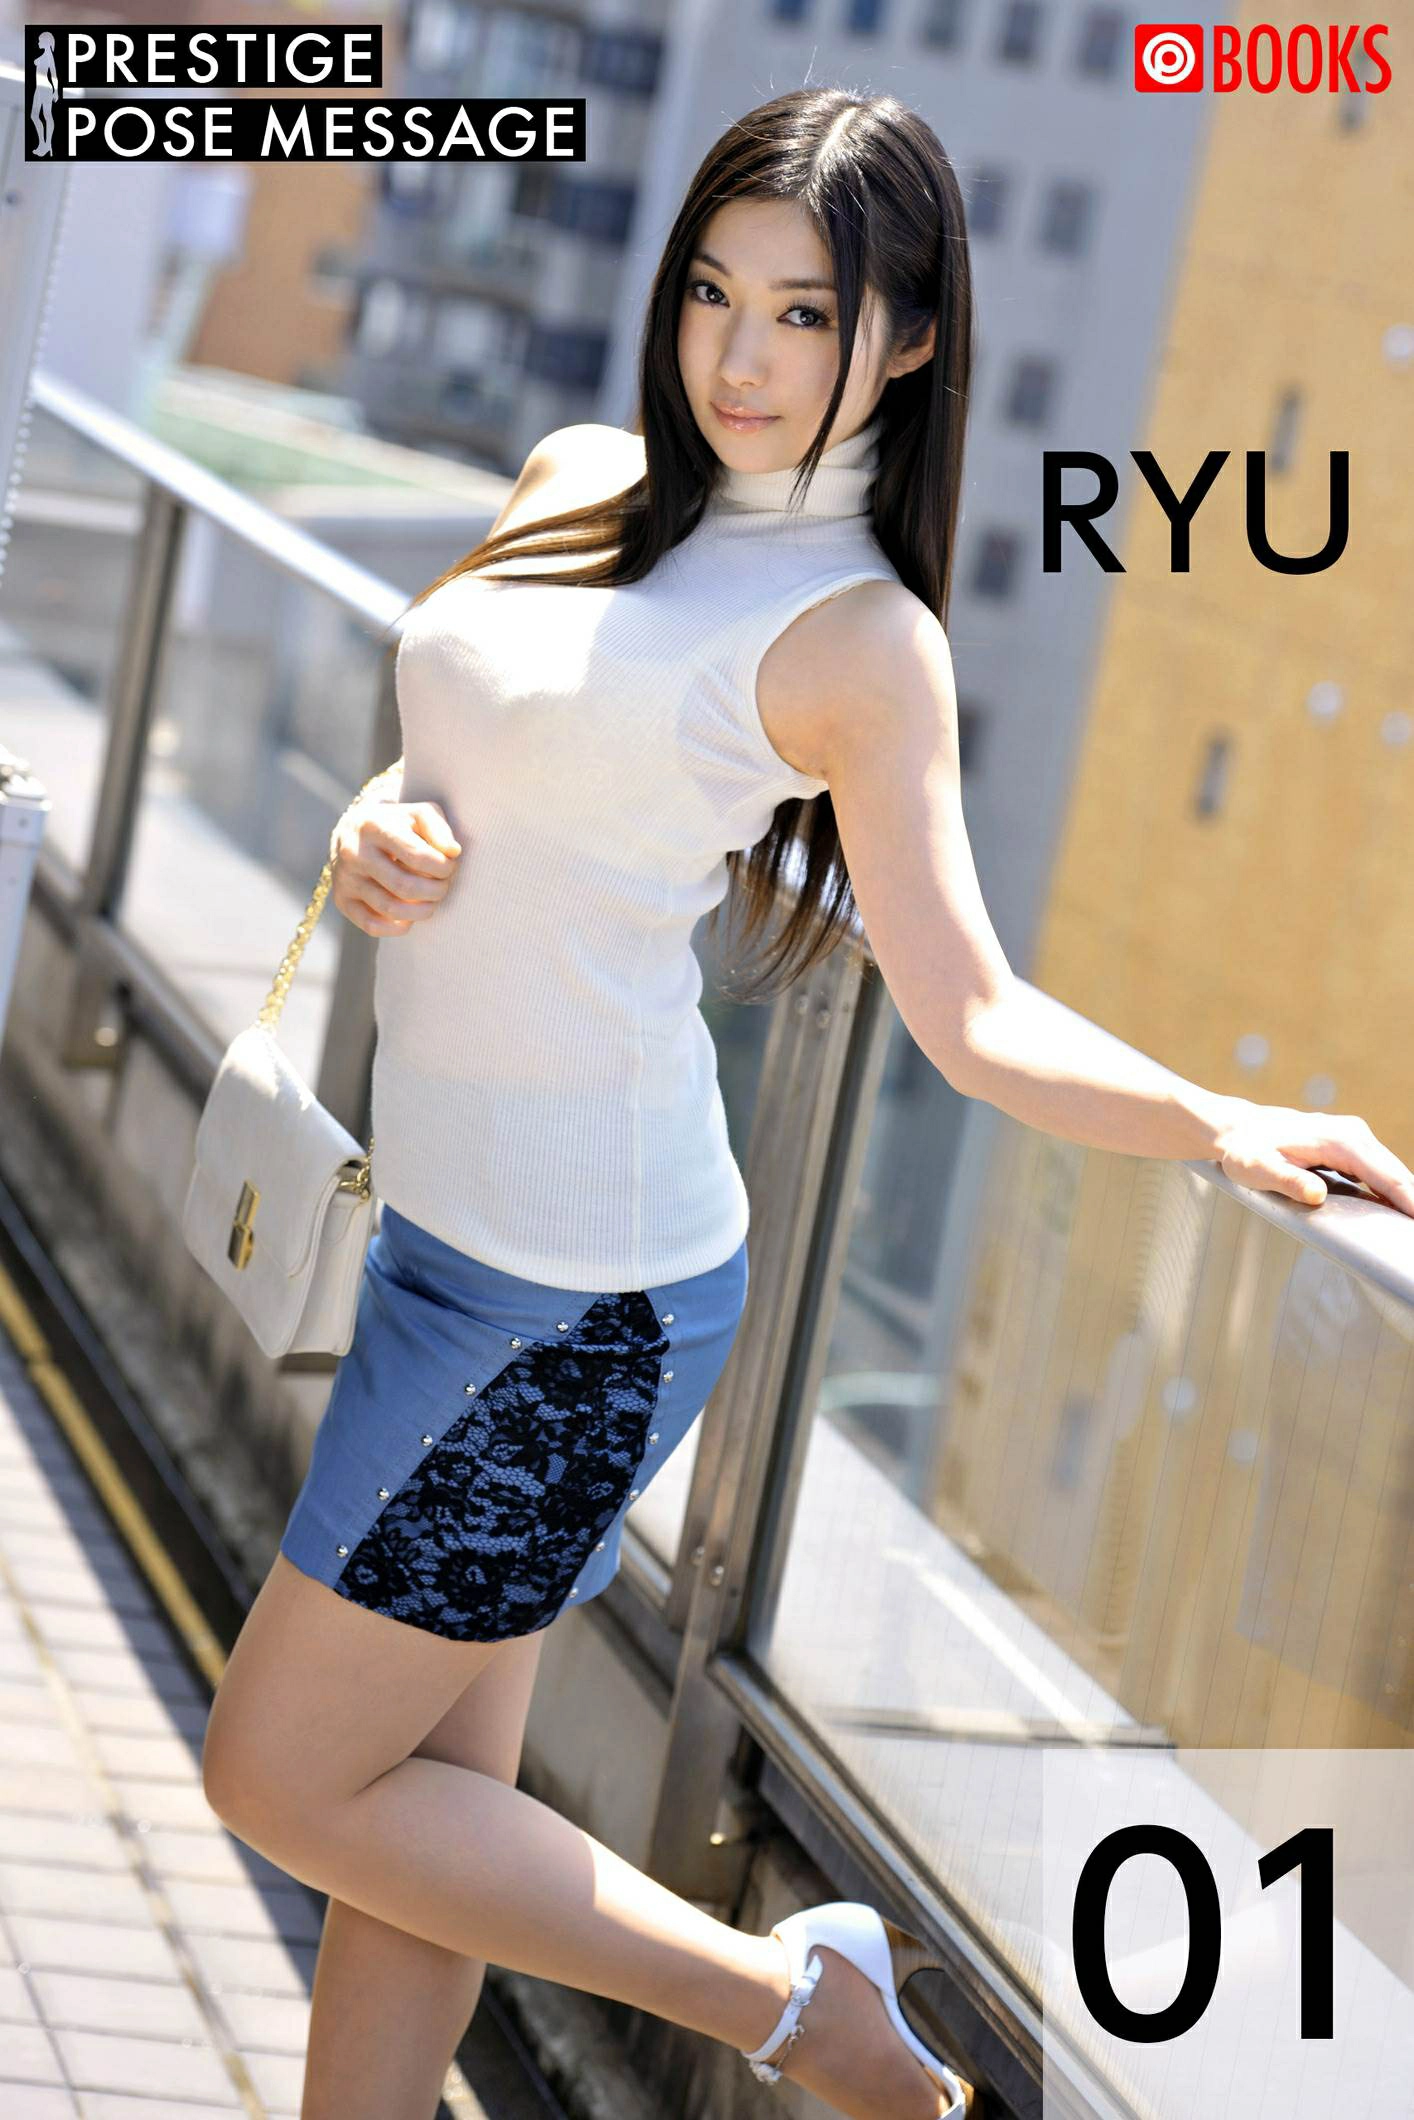 江波亮（江波りゅう，Ryu）- Prestige Pose Message 都市休闲服饰与蕾丝内衣加肉丝美腿写真集,0001